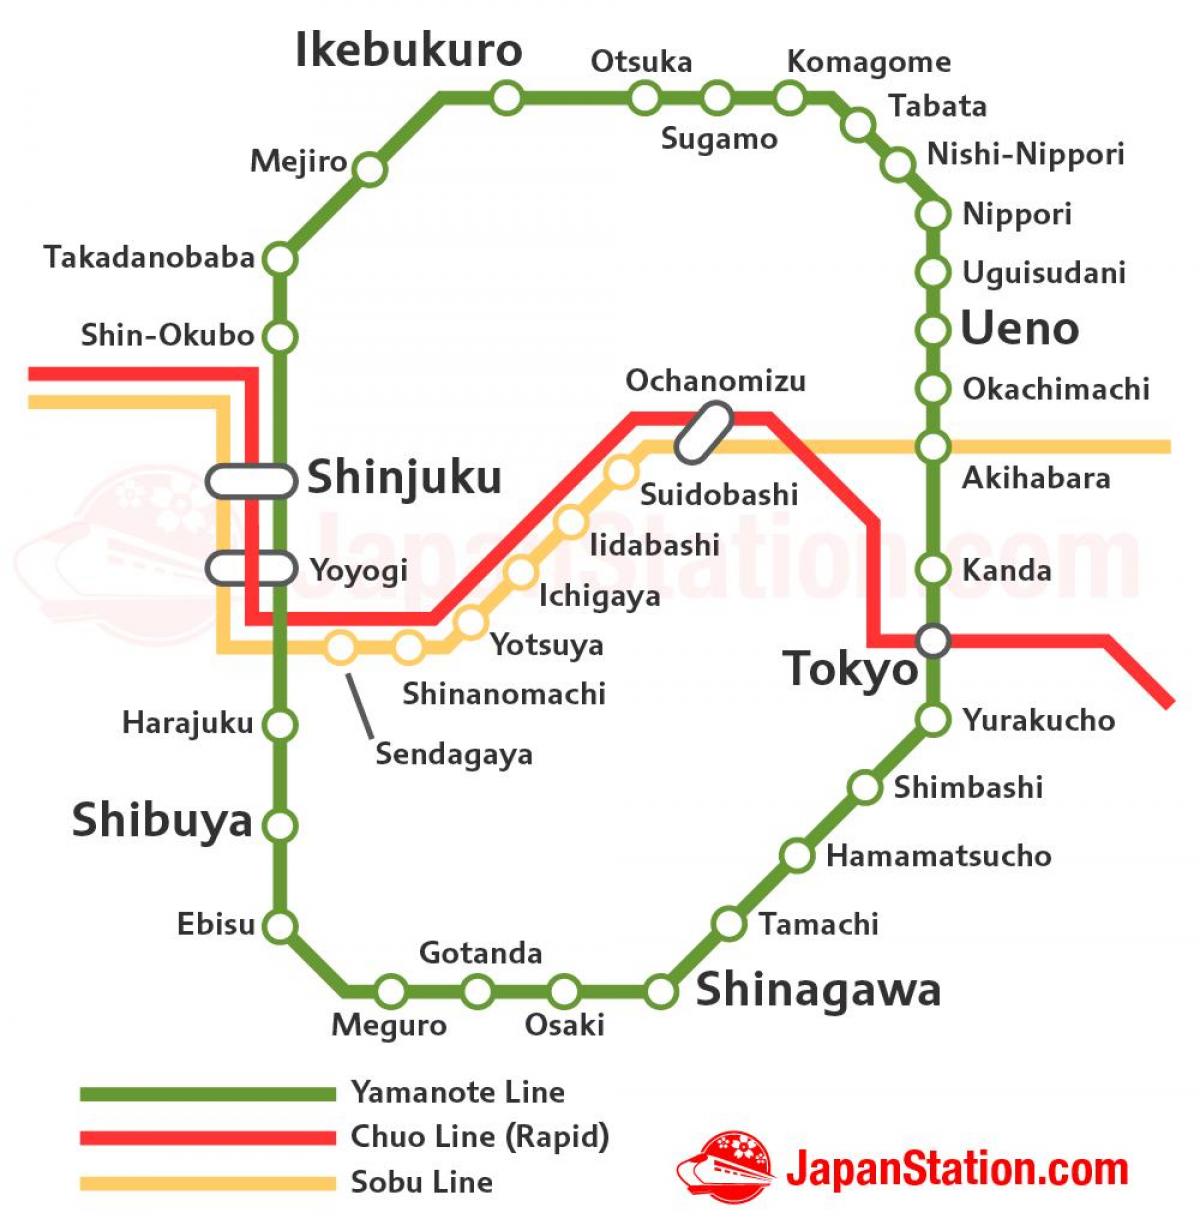 Tokyo linea JR mappa